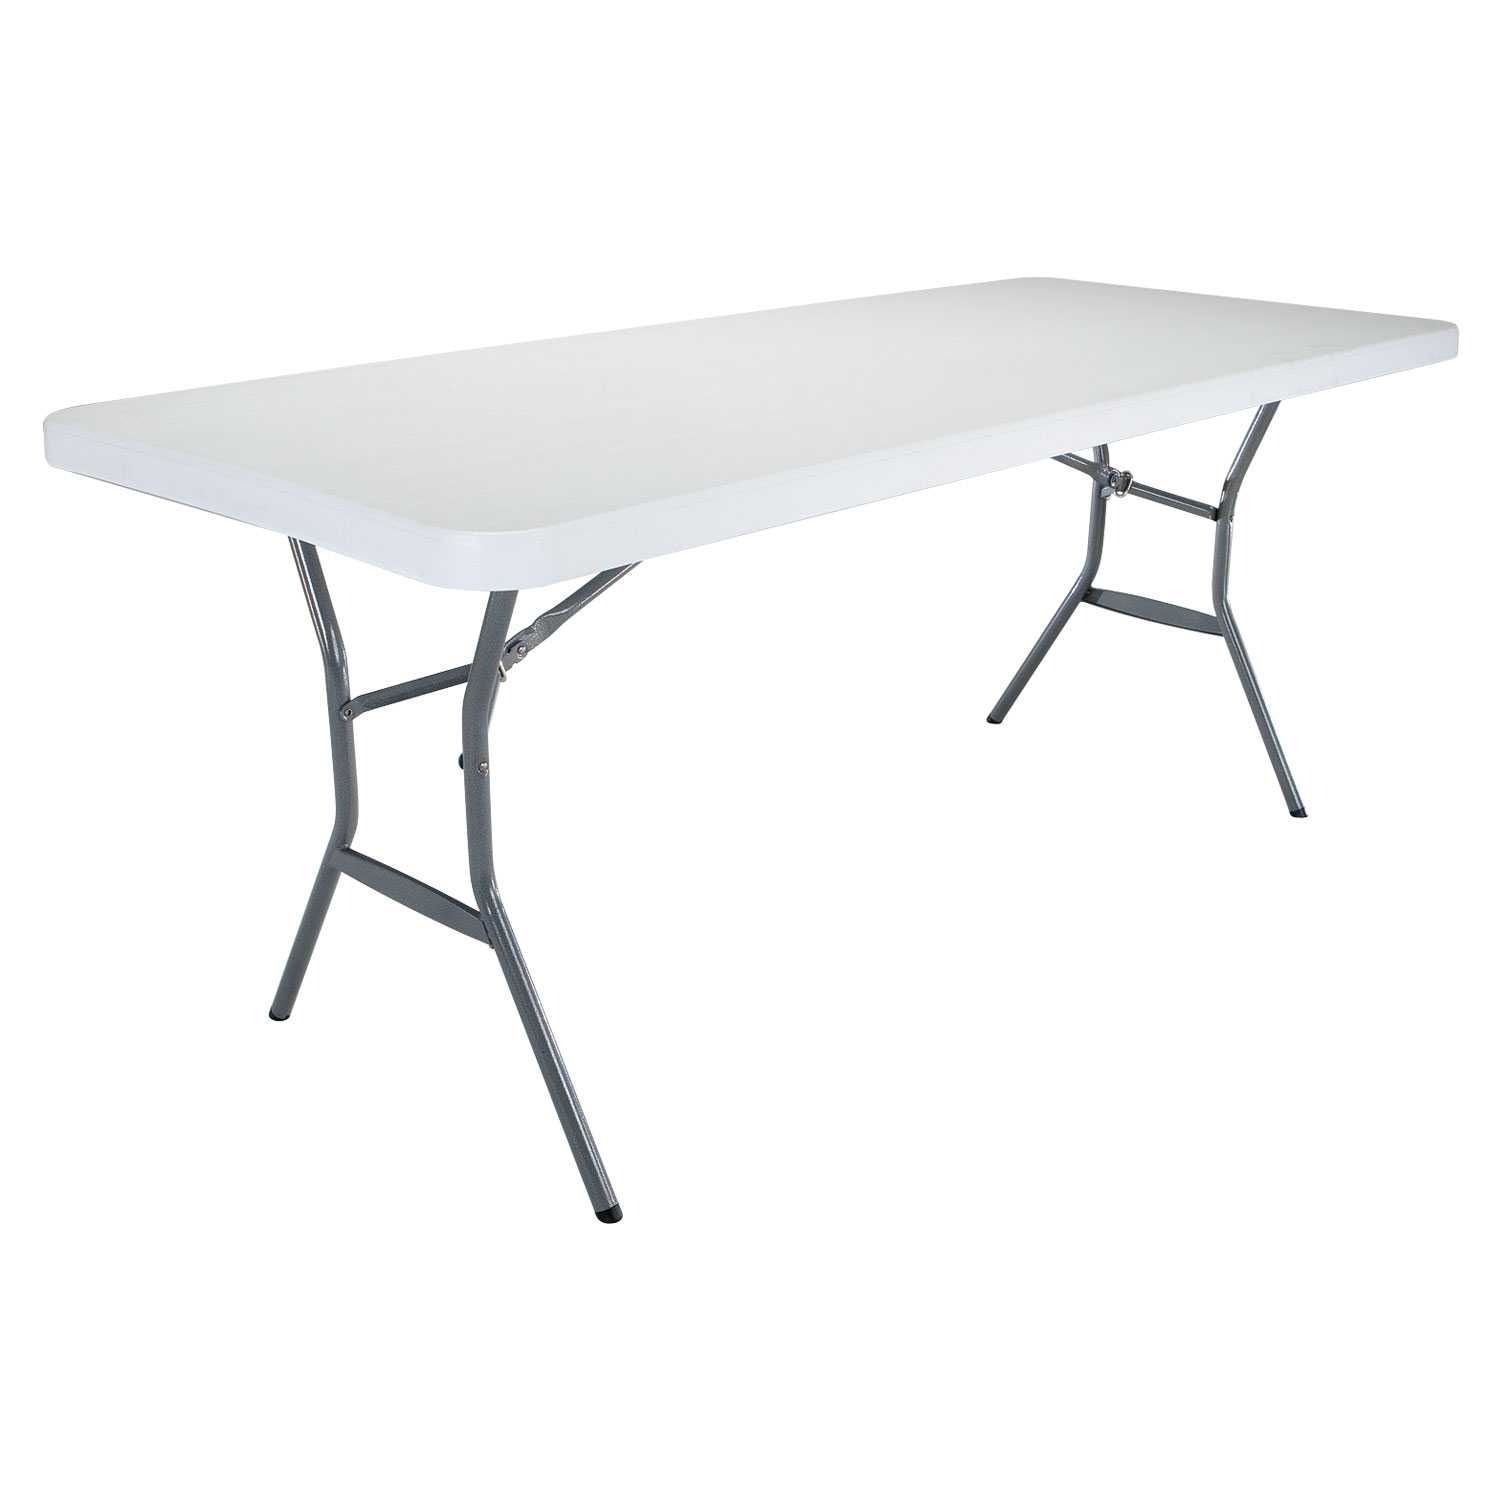 6ft Rectangular folding table (white) 183cm / 8 people / light commercial